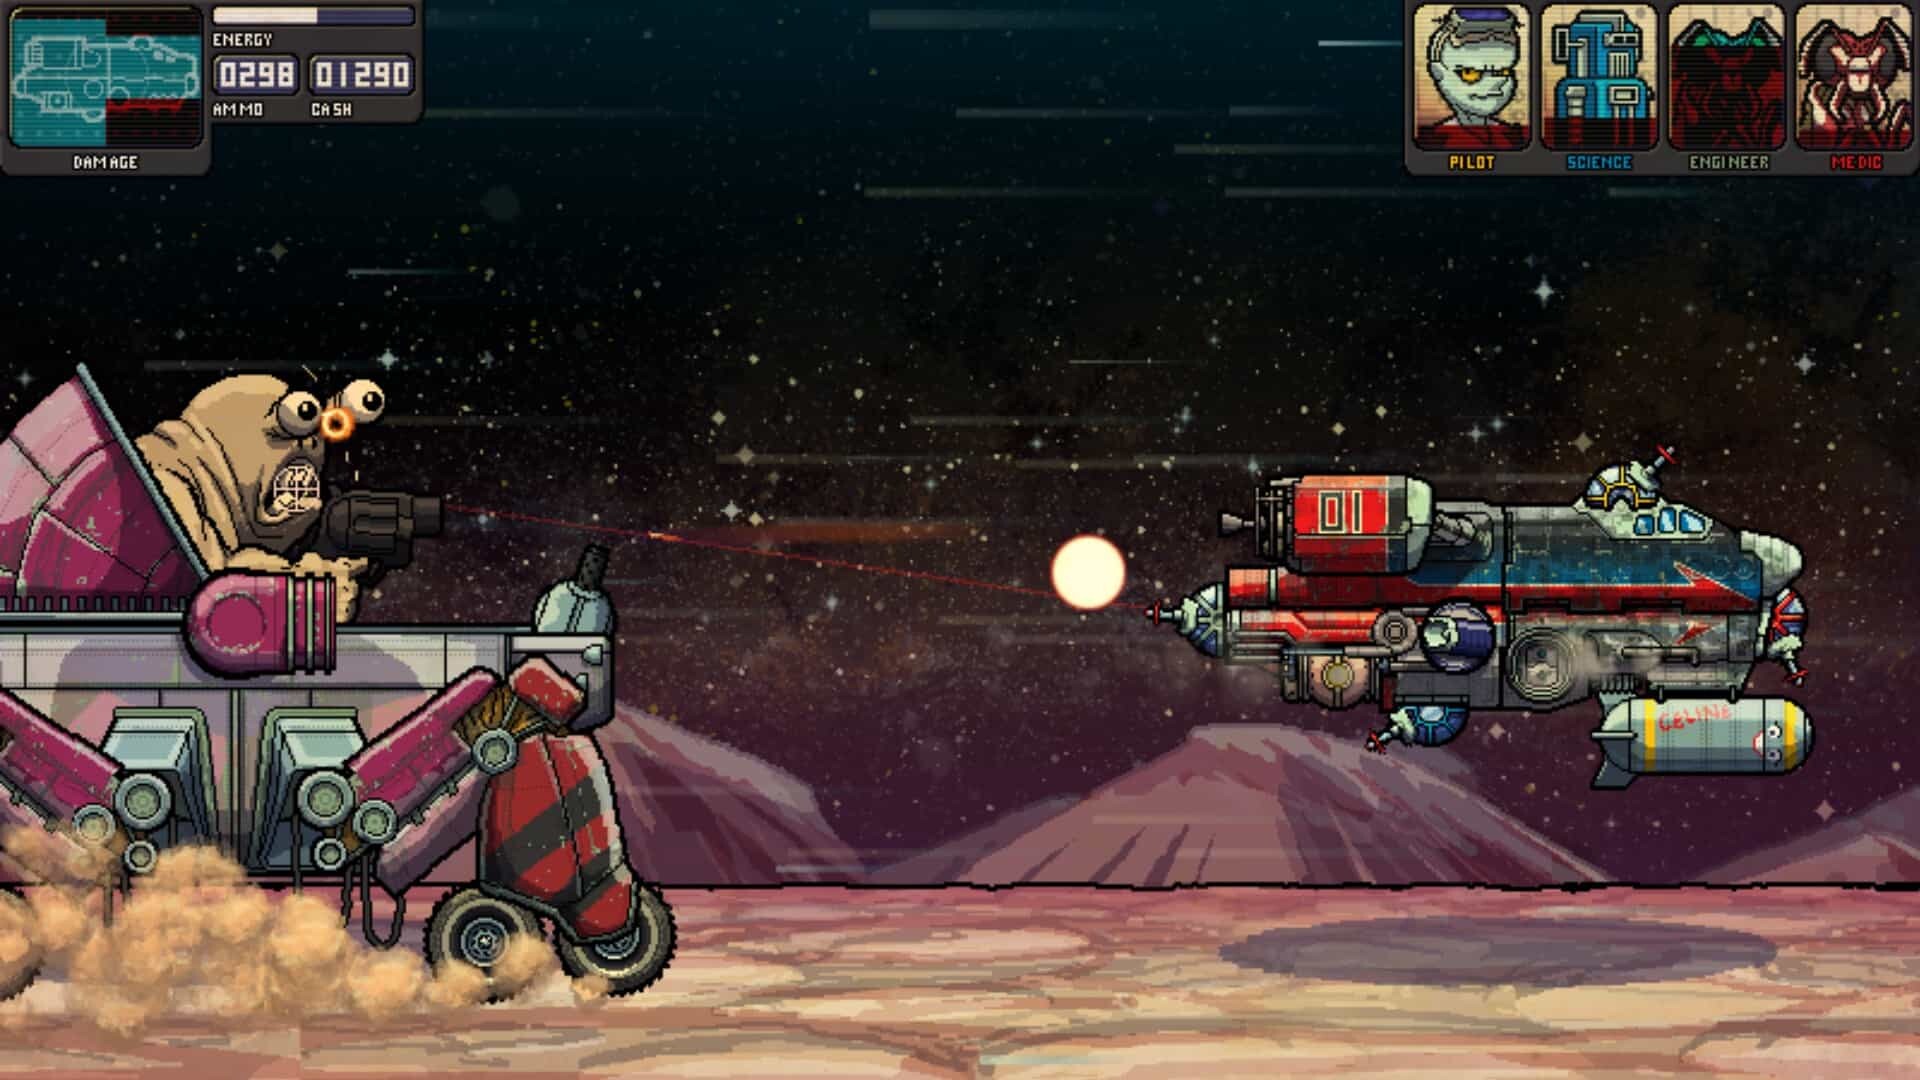 Fission Superstar X game screenshot, boss fight